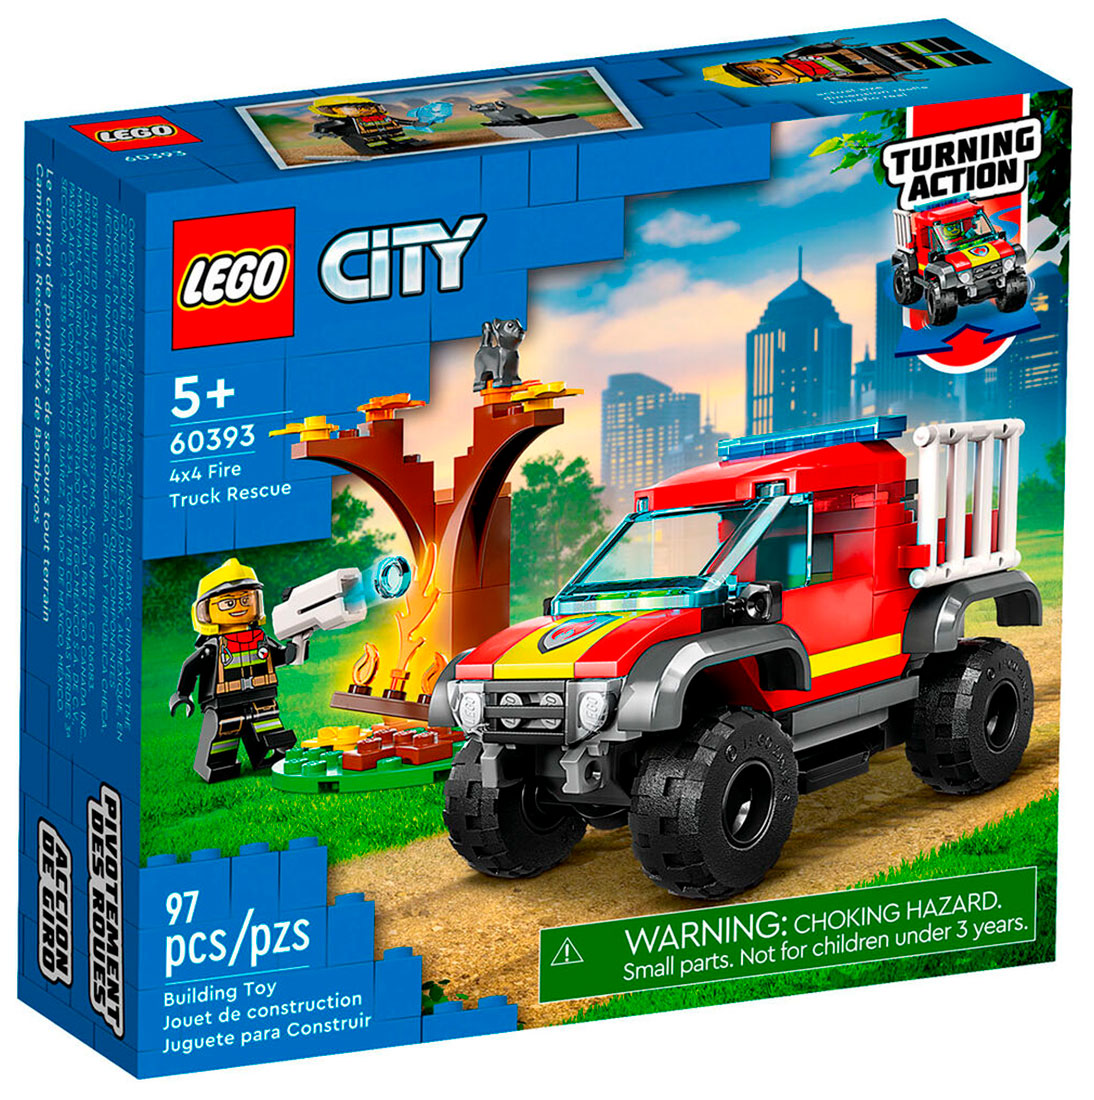 Конструктор Lego City Спасательный пожарный внедорожник (60393) конструктор lego city 60393 4x4 fire truck rescue 97 дет